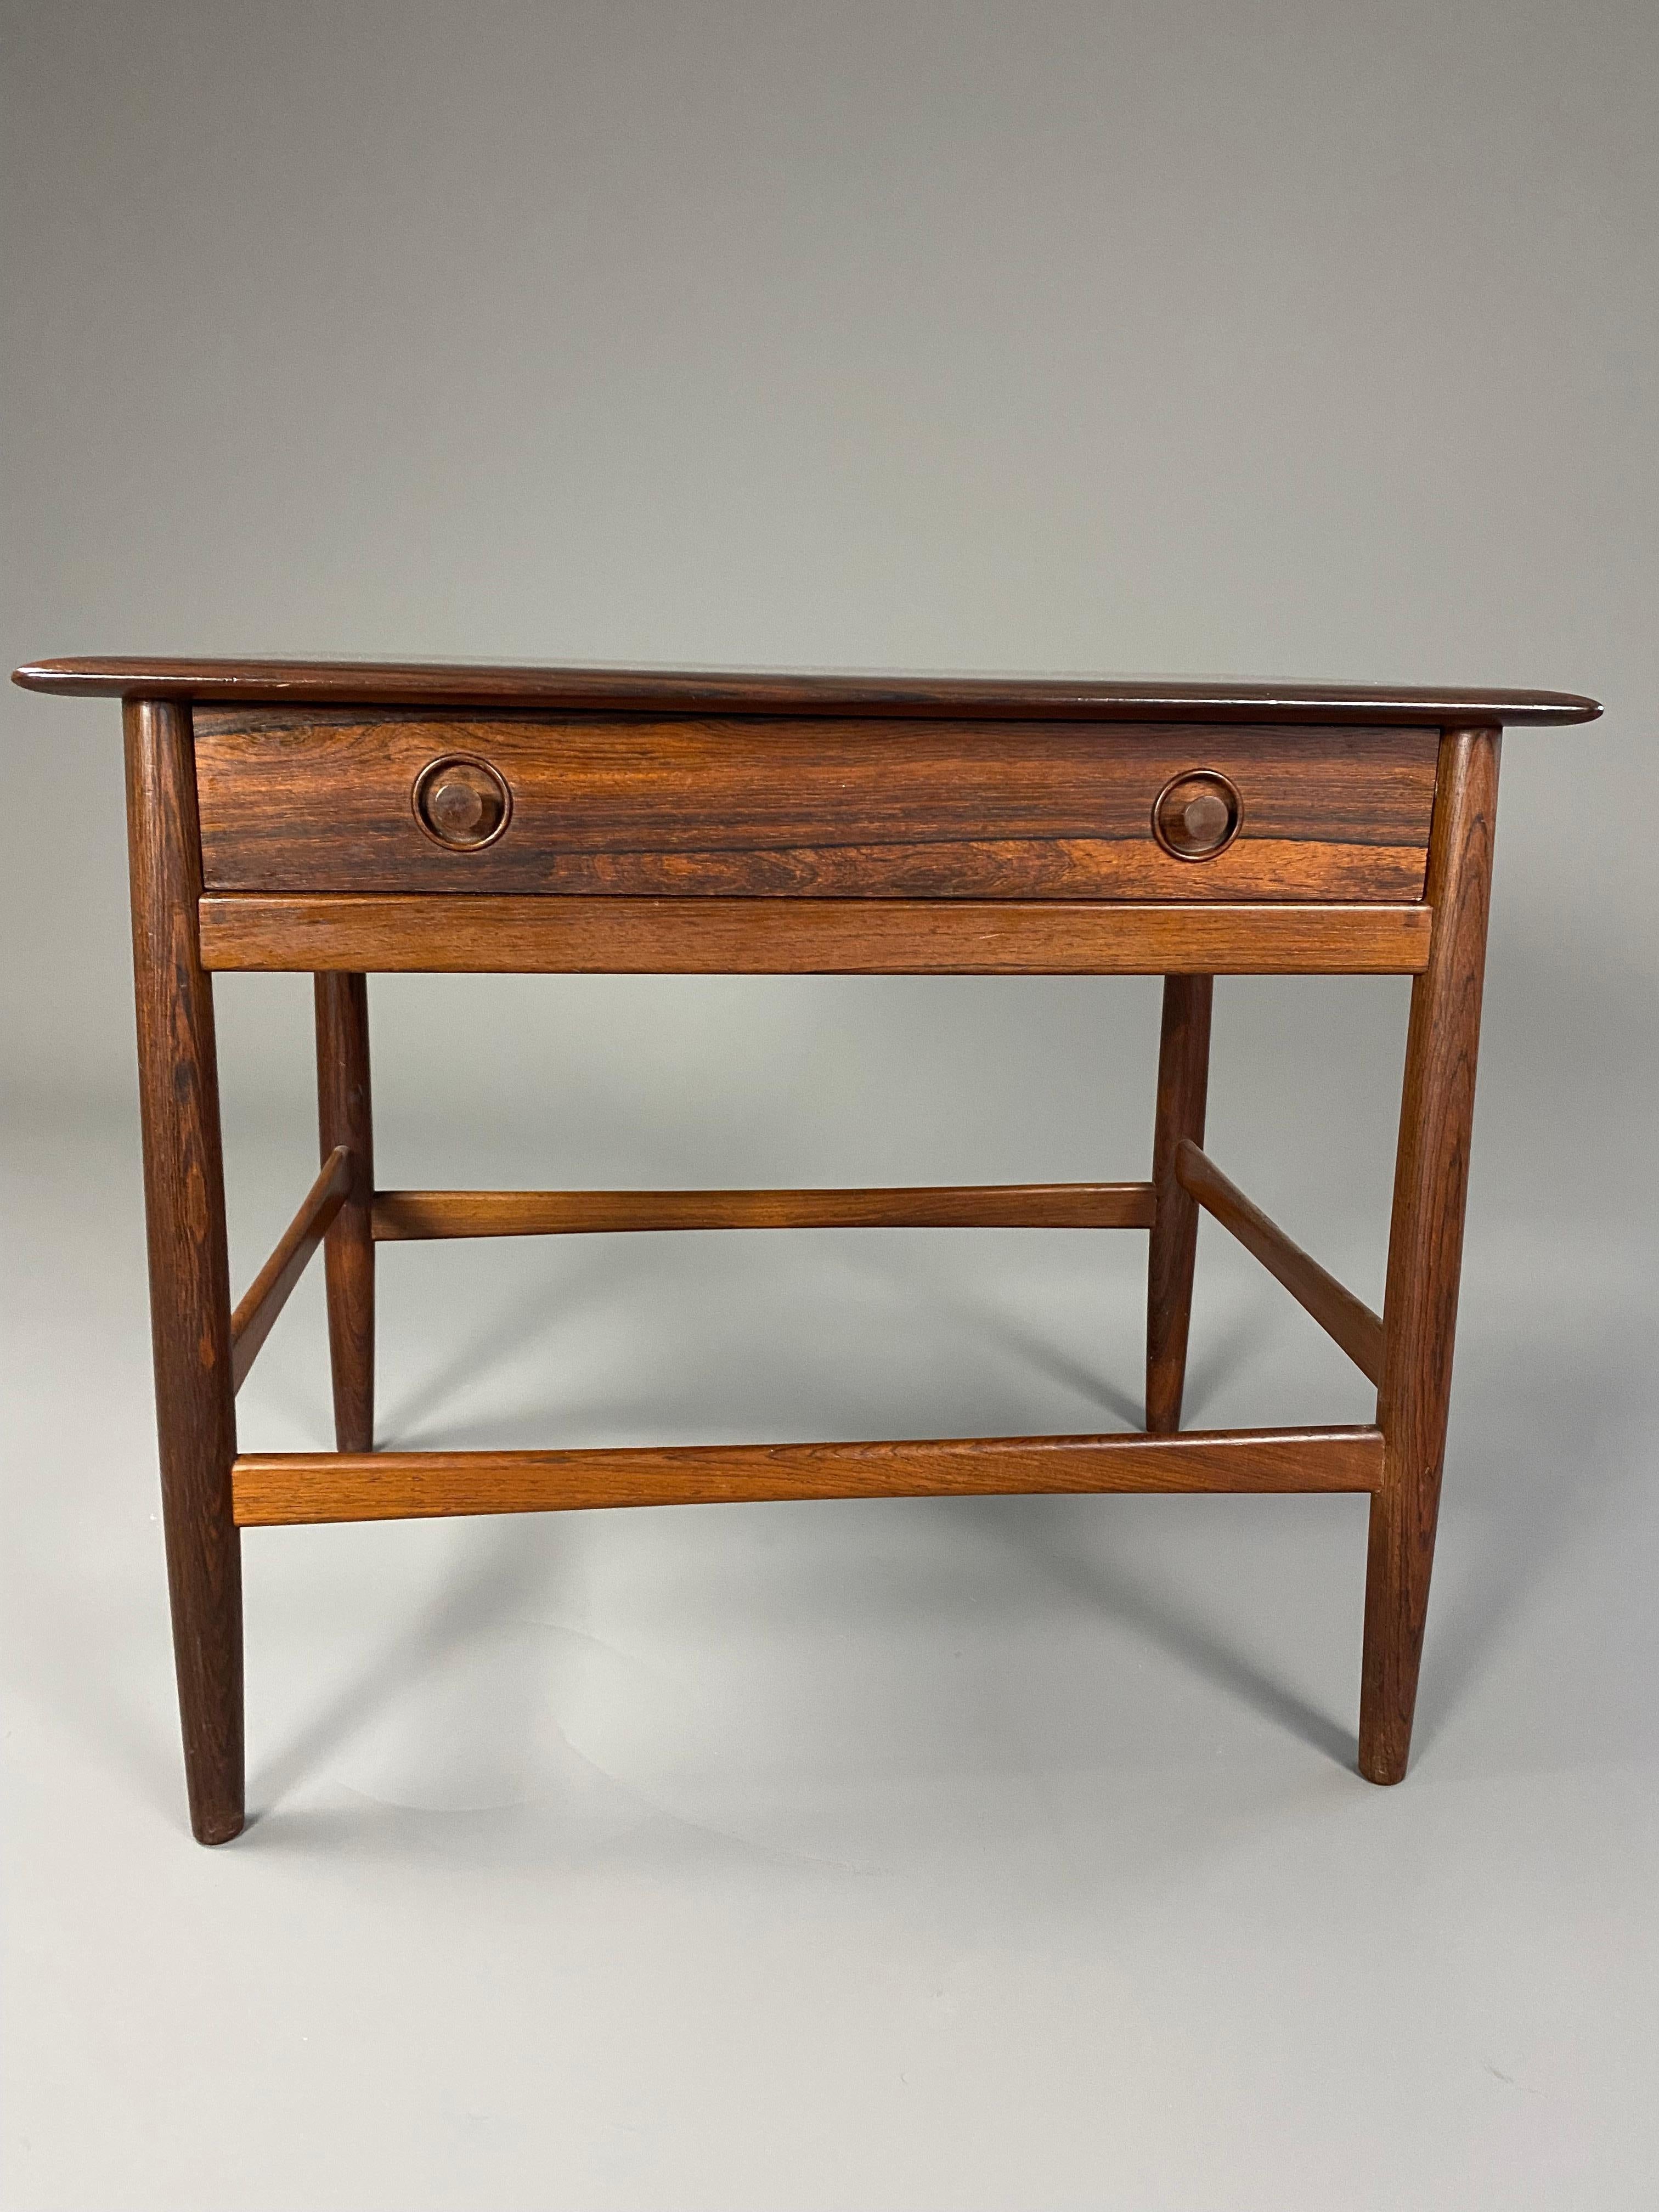 Stilvoller dänischer Beistell-/Stricktisch aus der Jahrhundertmitte in fantastischem Zustand. 
Wir haben die Tischplatte restauriert und diese elegante Schönheit ist bereit für ihr neues Zuhause.
Der Tisch wird versichert in einer maßgefertigten